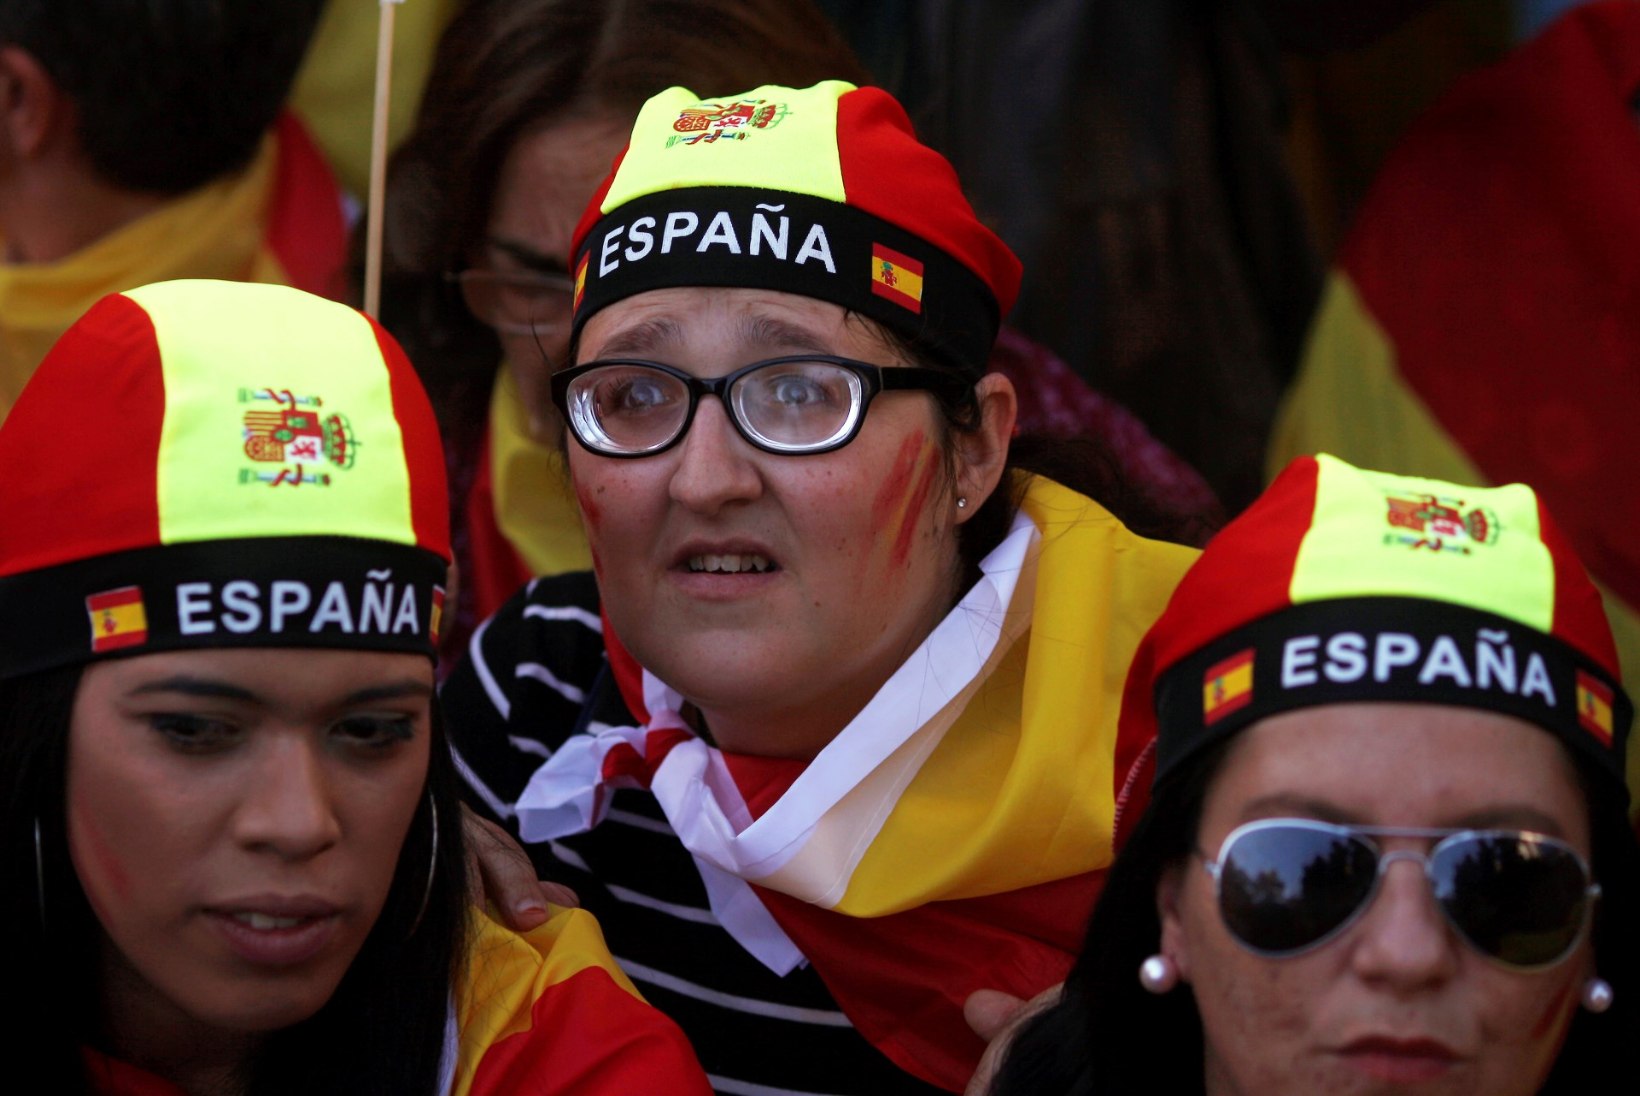 FOTOD JA TV3 VIDEO | Barcelonas nõudsid sajad tuhanded Hispaania ühtsuse hoidmist